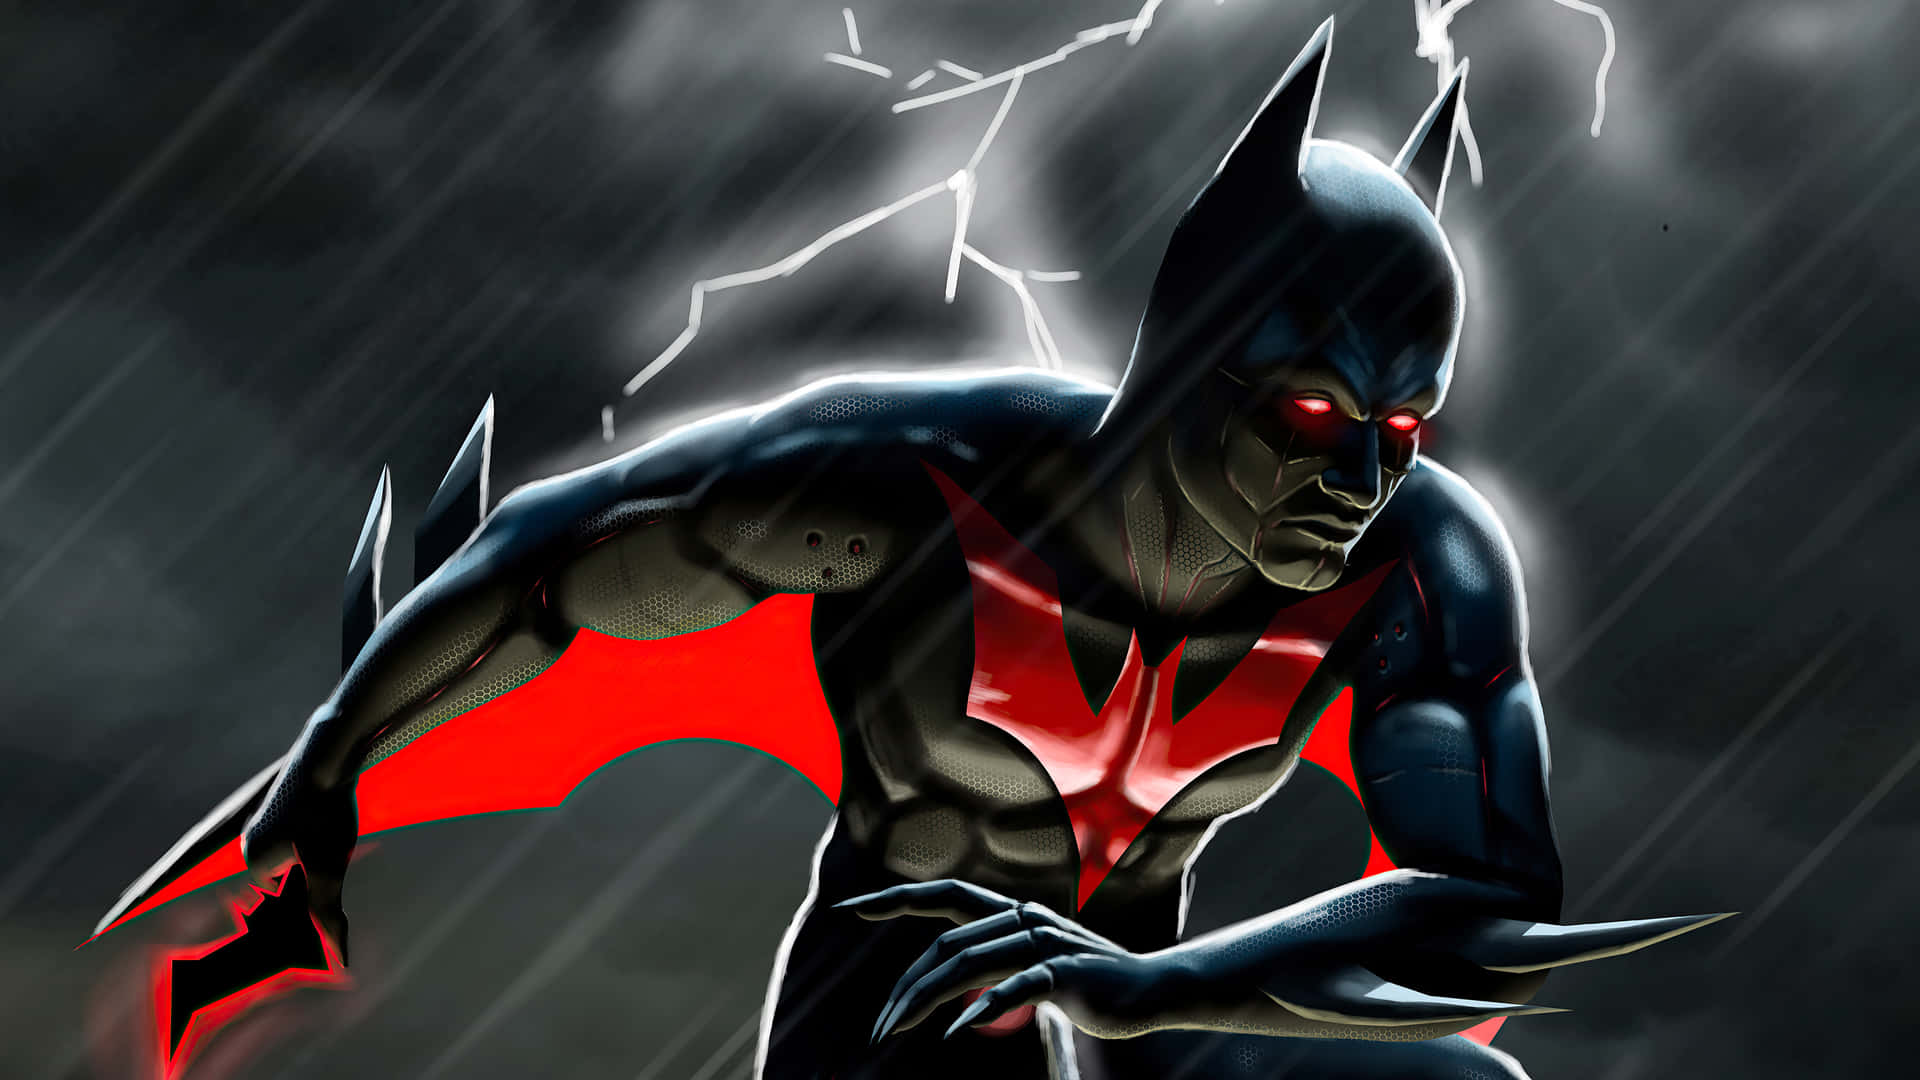 Batmanse Transforma Para Surcar Los Cielos En La Ciudad De Neo Gotham.